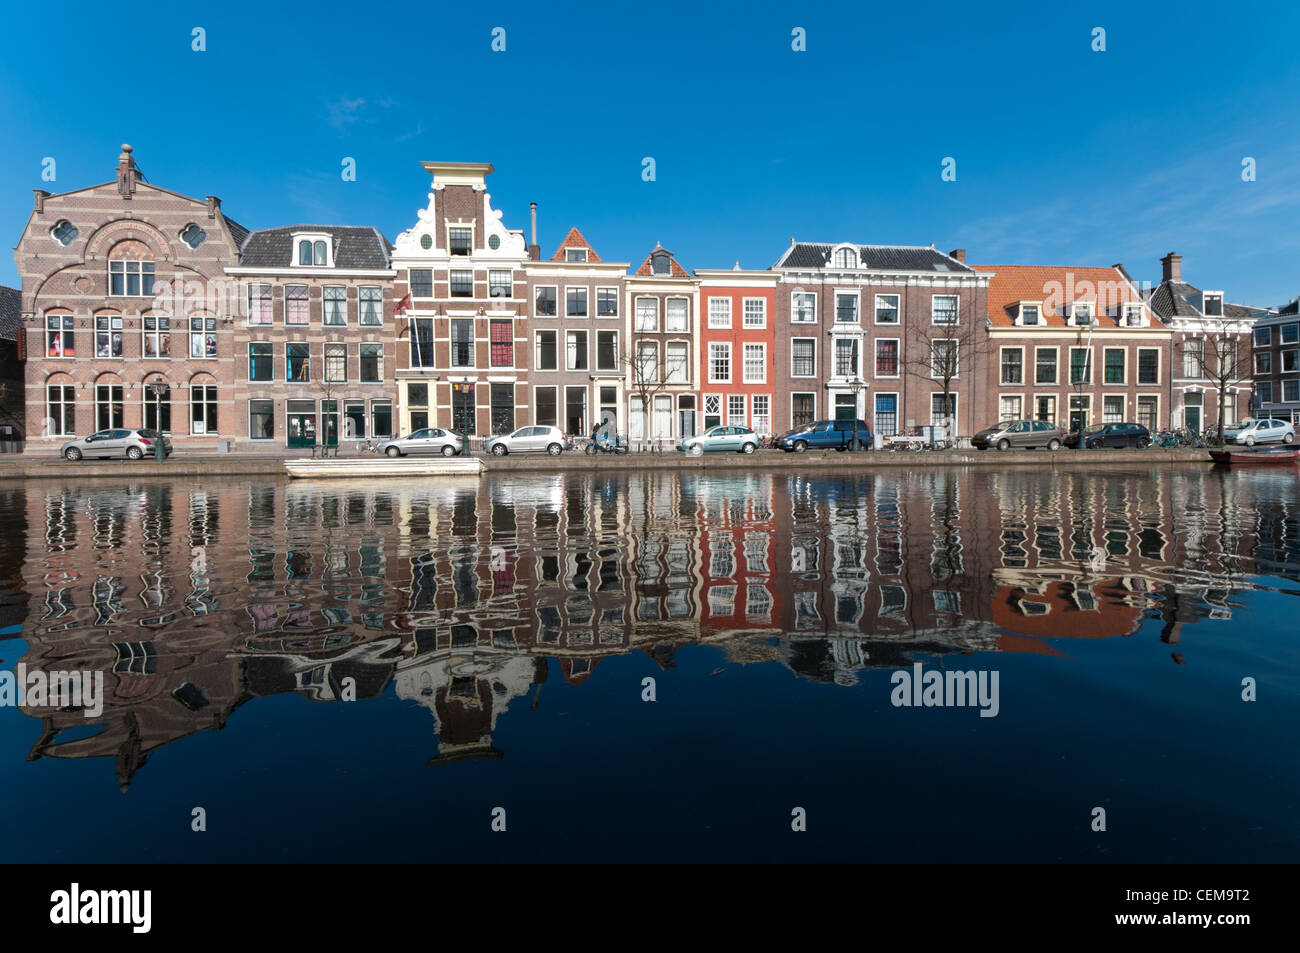 monumentale Fassaden von Häusern an einem Kanal in Leiden, Niederlande Stockfoto